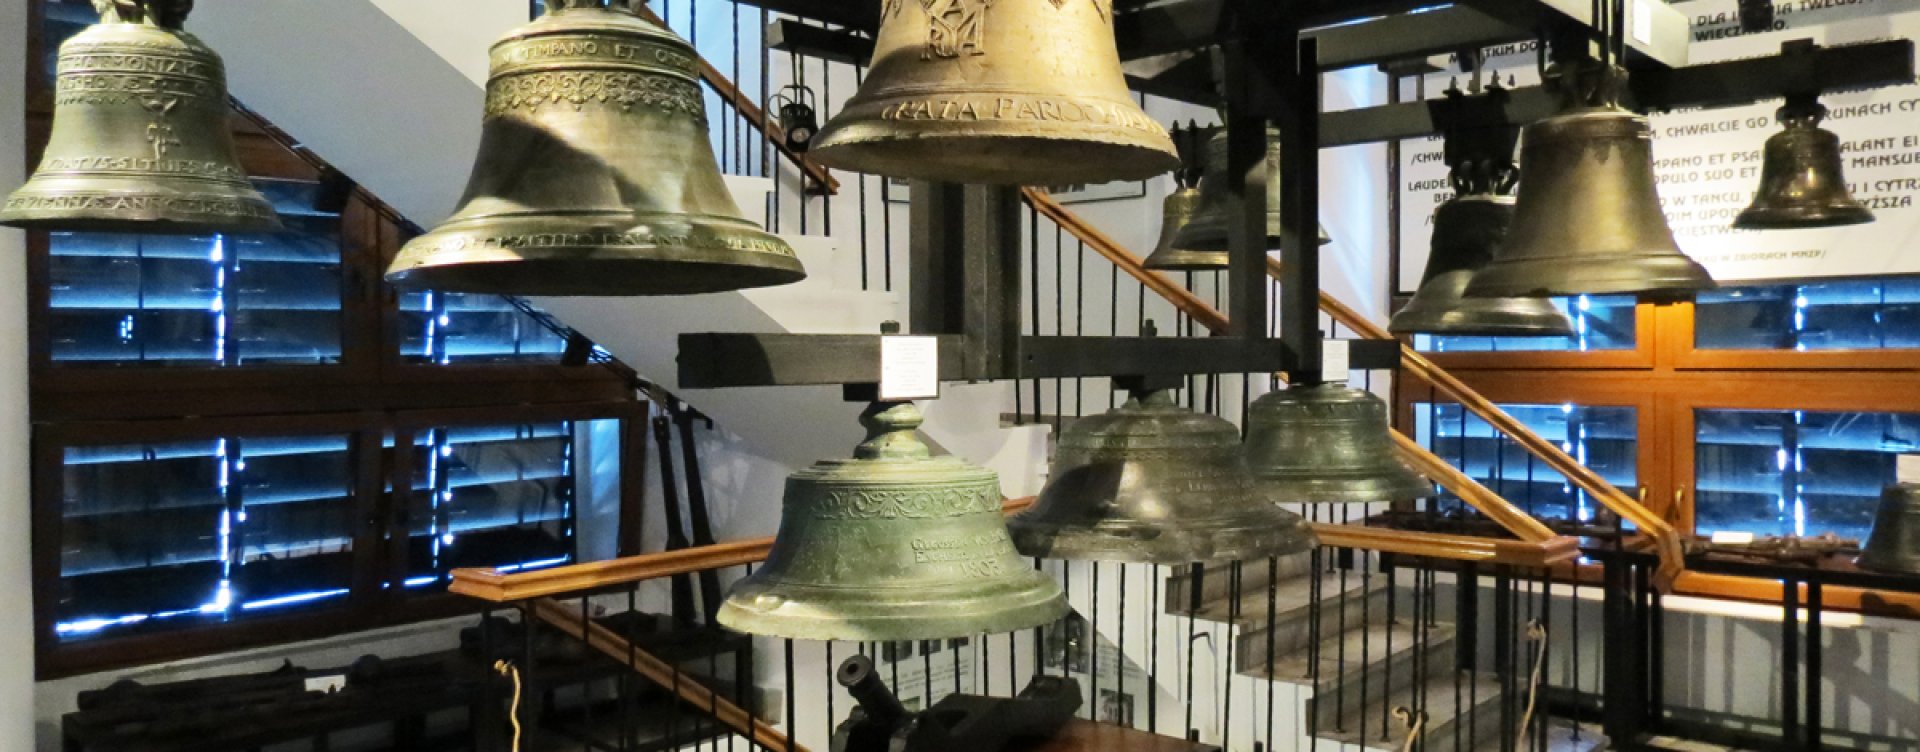 Muzeum Dzwonów i Fajek w Przemyślu